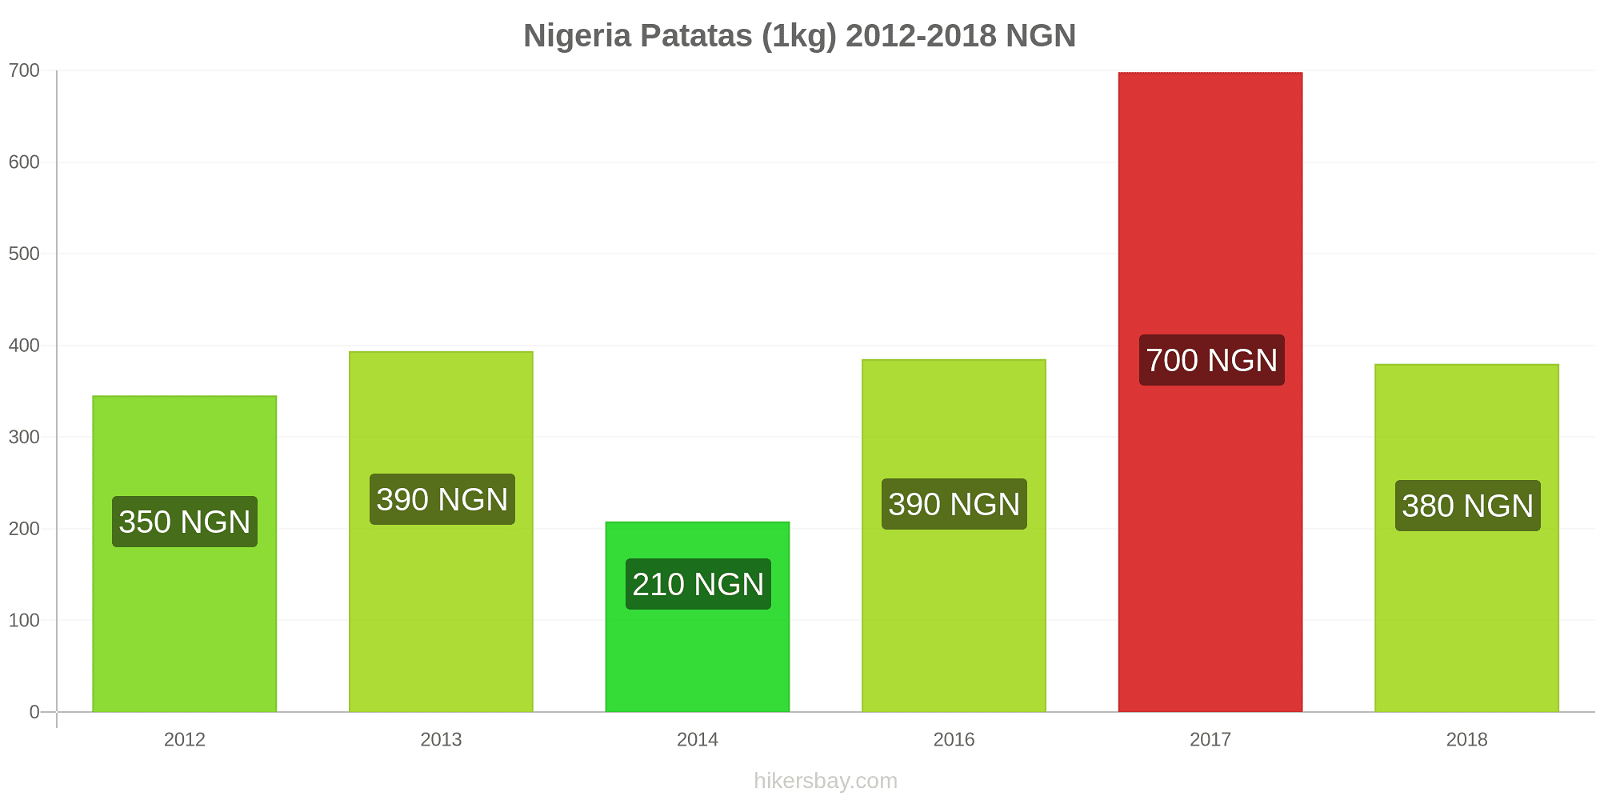 Nigeria cambios de precios Patatas (1kg) hikersbay.com